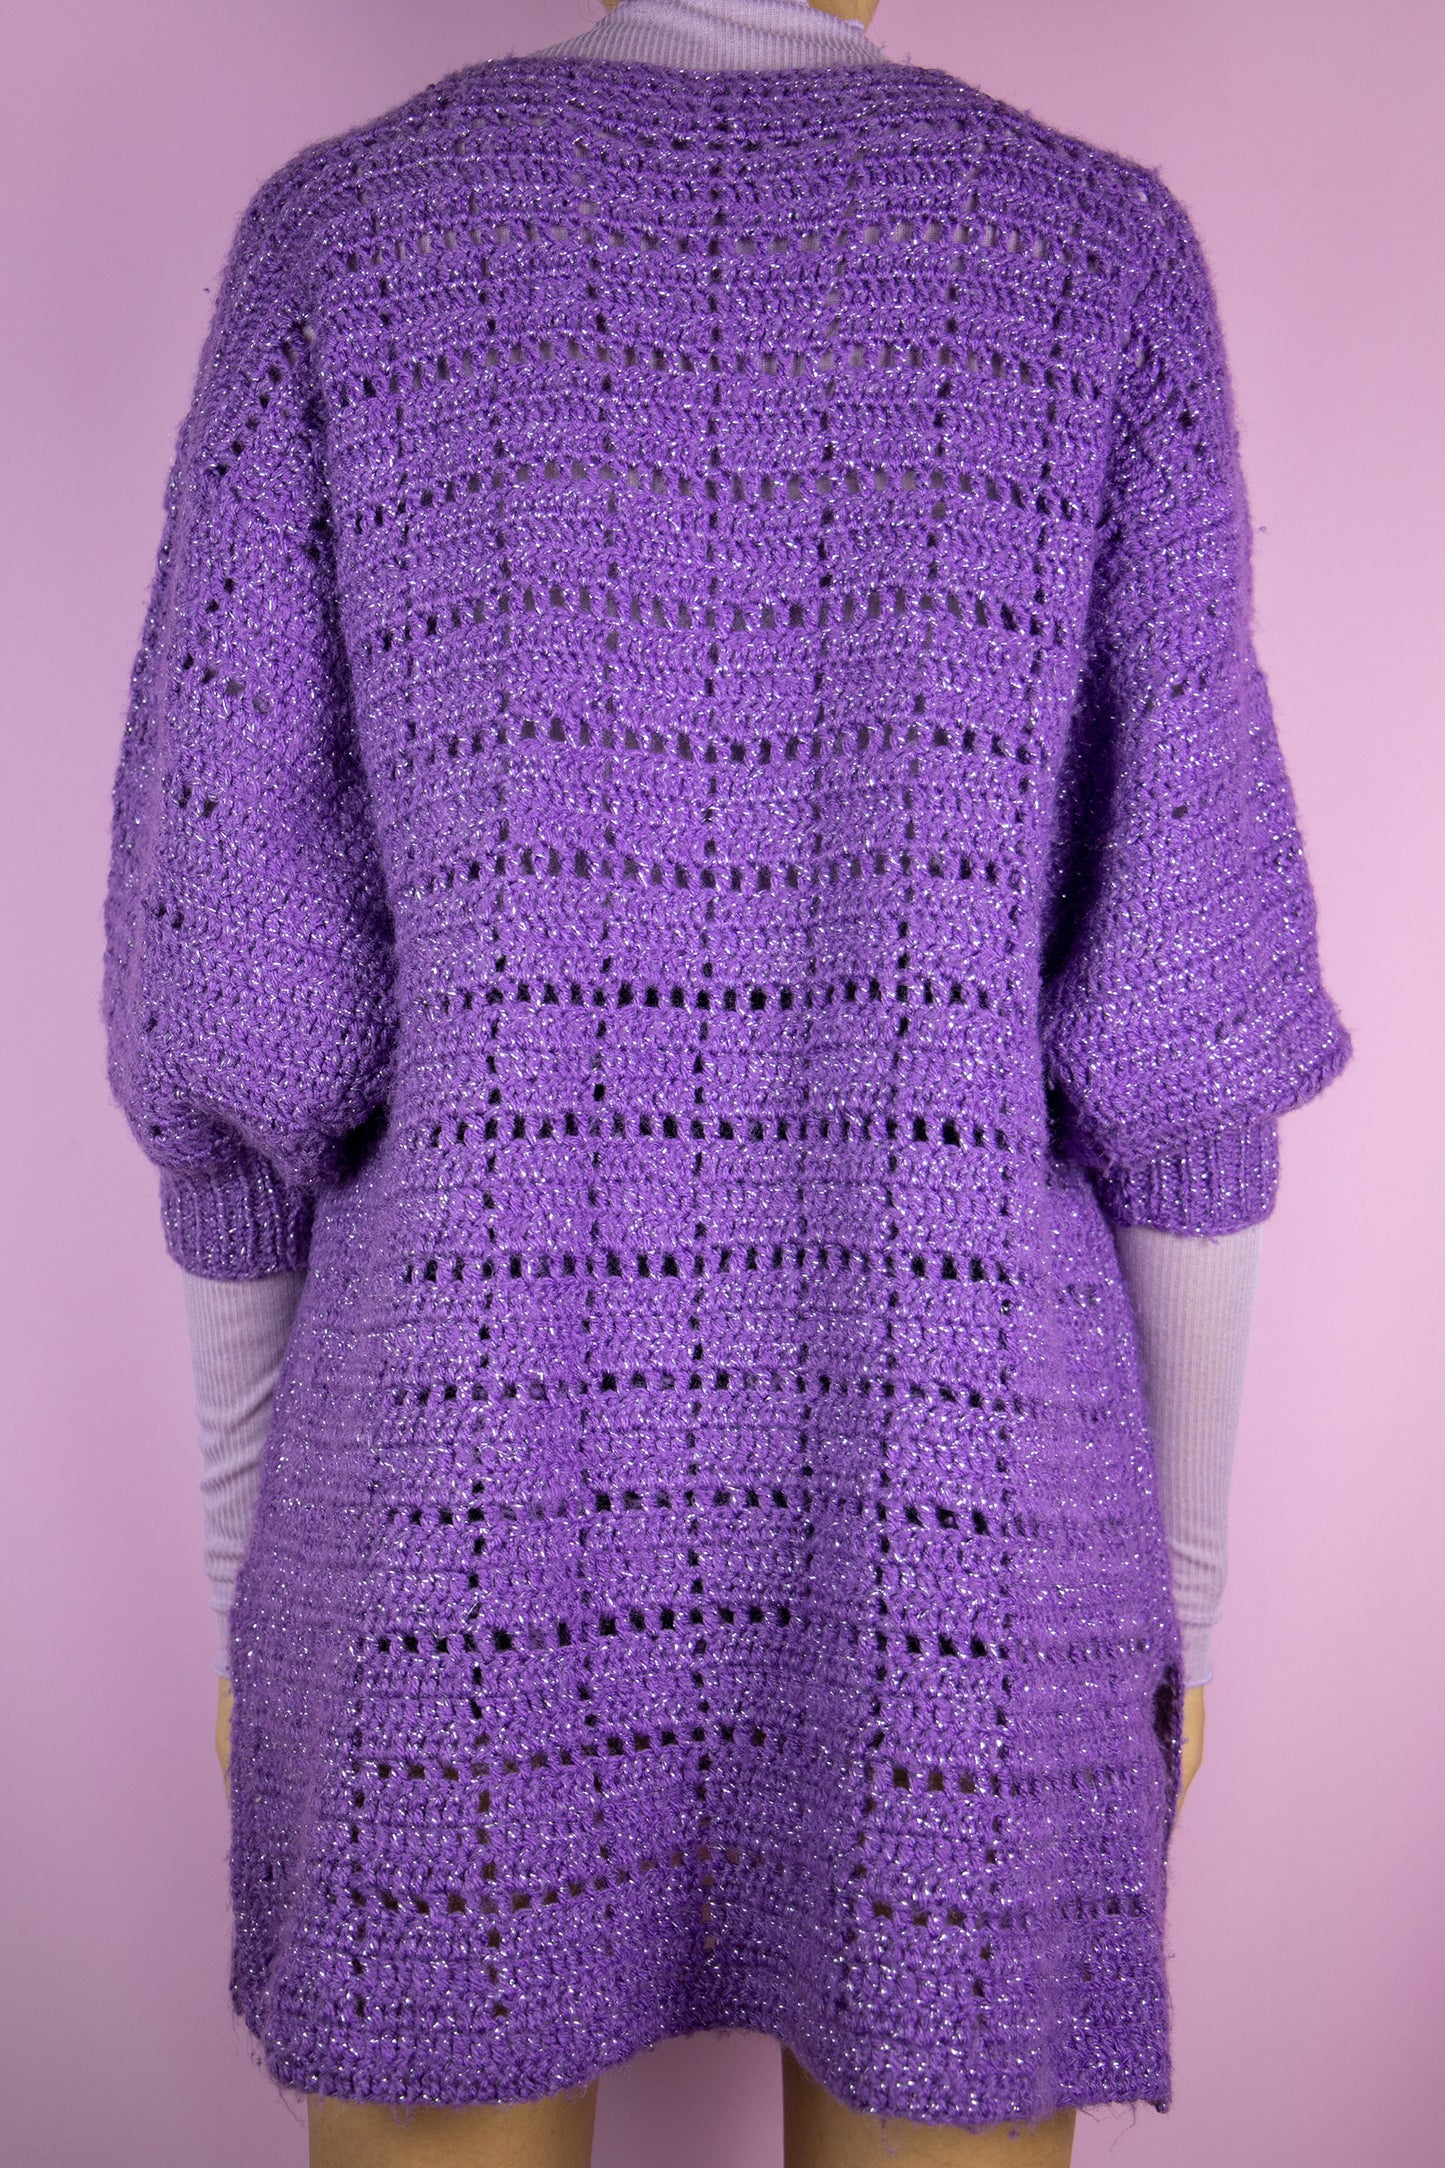 Vintage 90s Purple Crochet Knit Sweater - L